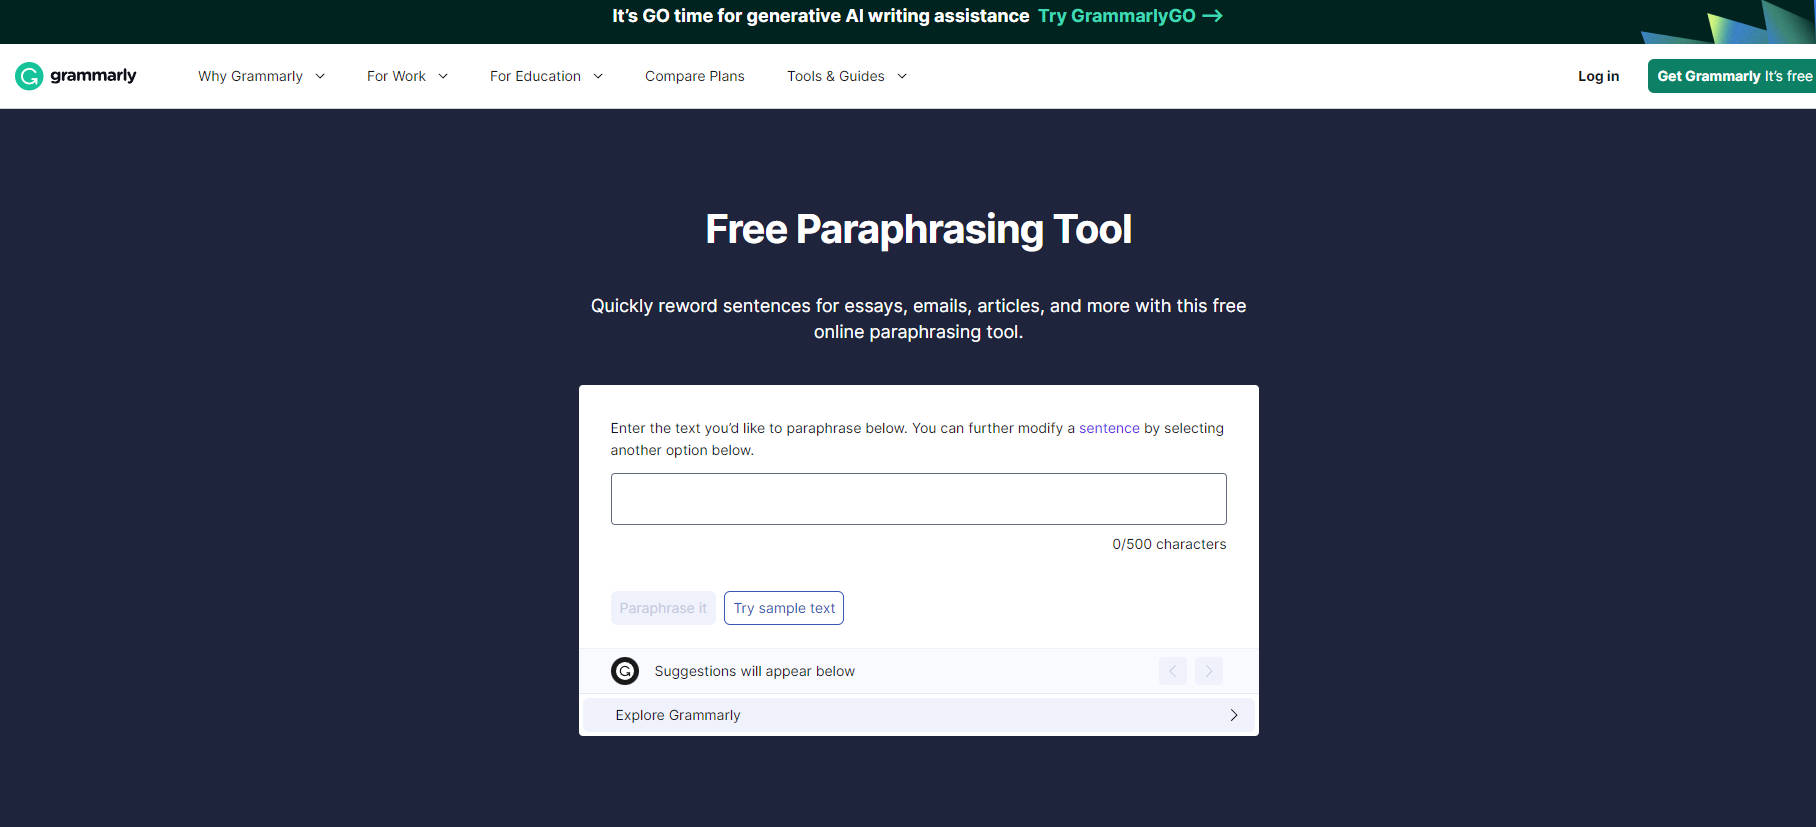 Free Paraphrasing Tool | Grammarly